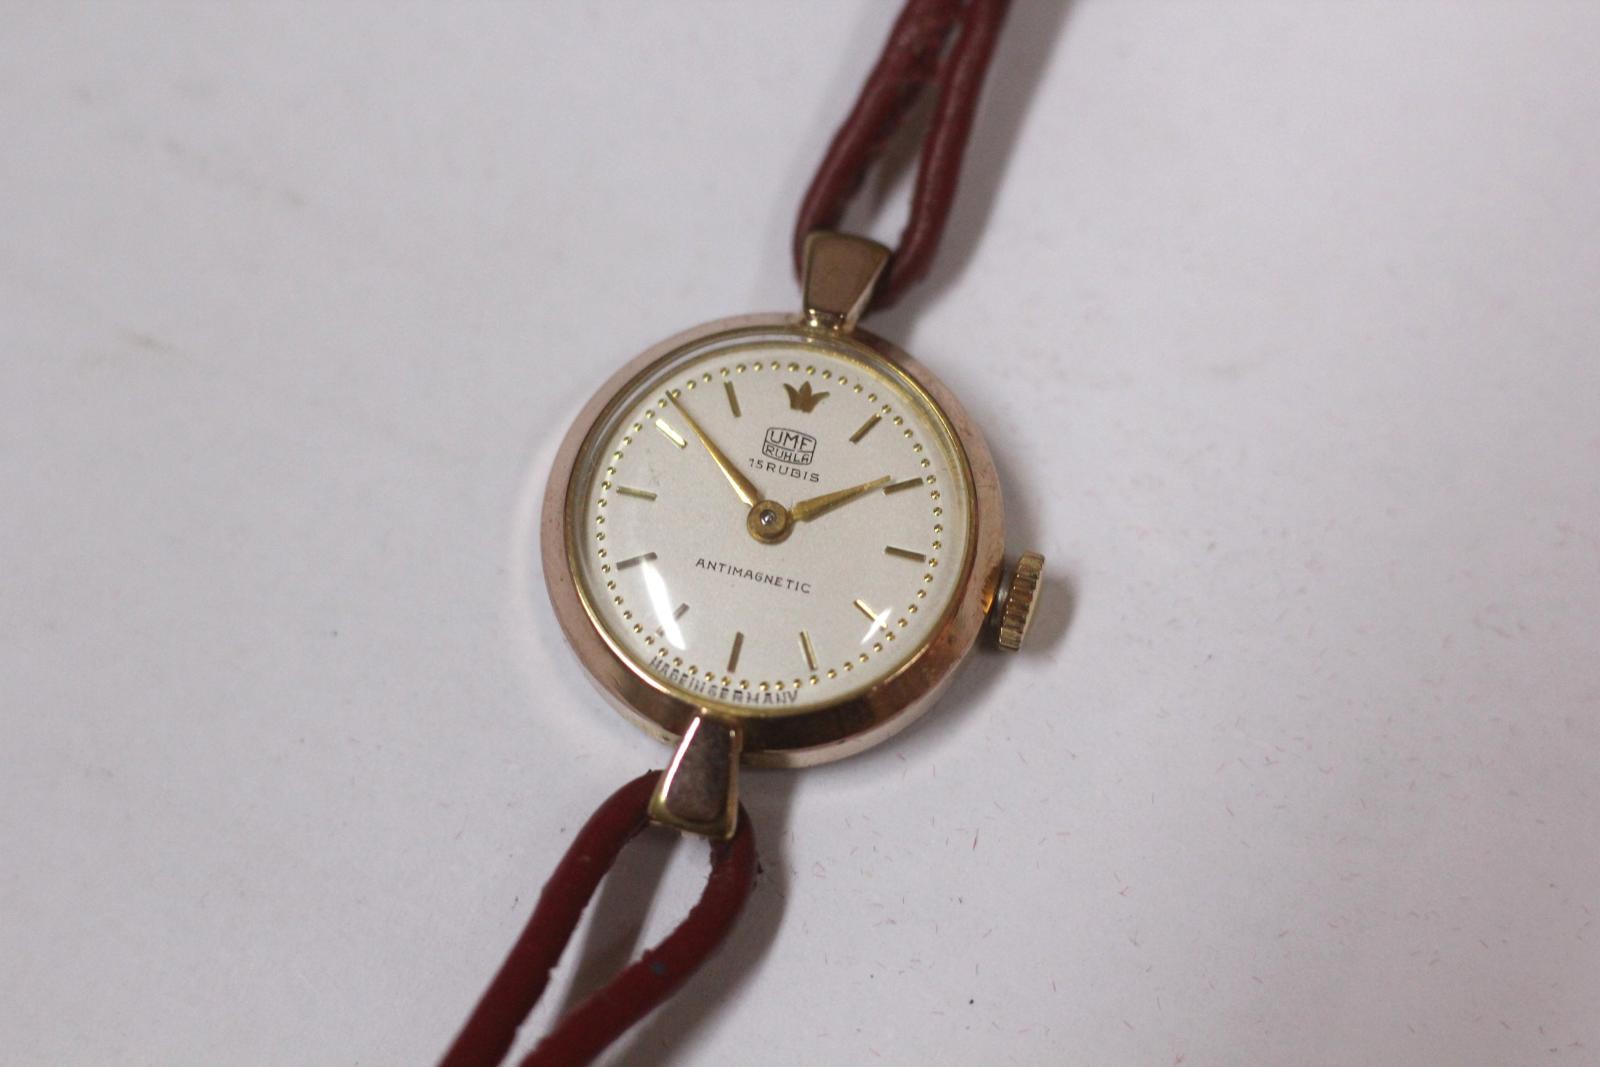 dámske hodinky UMF Ruhla, biely číselník, funkčný - Starožitnosti